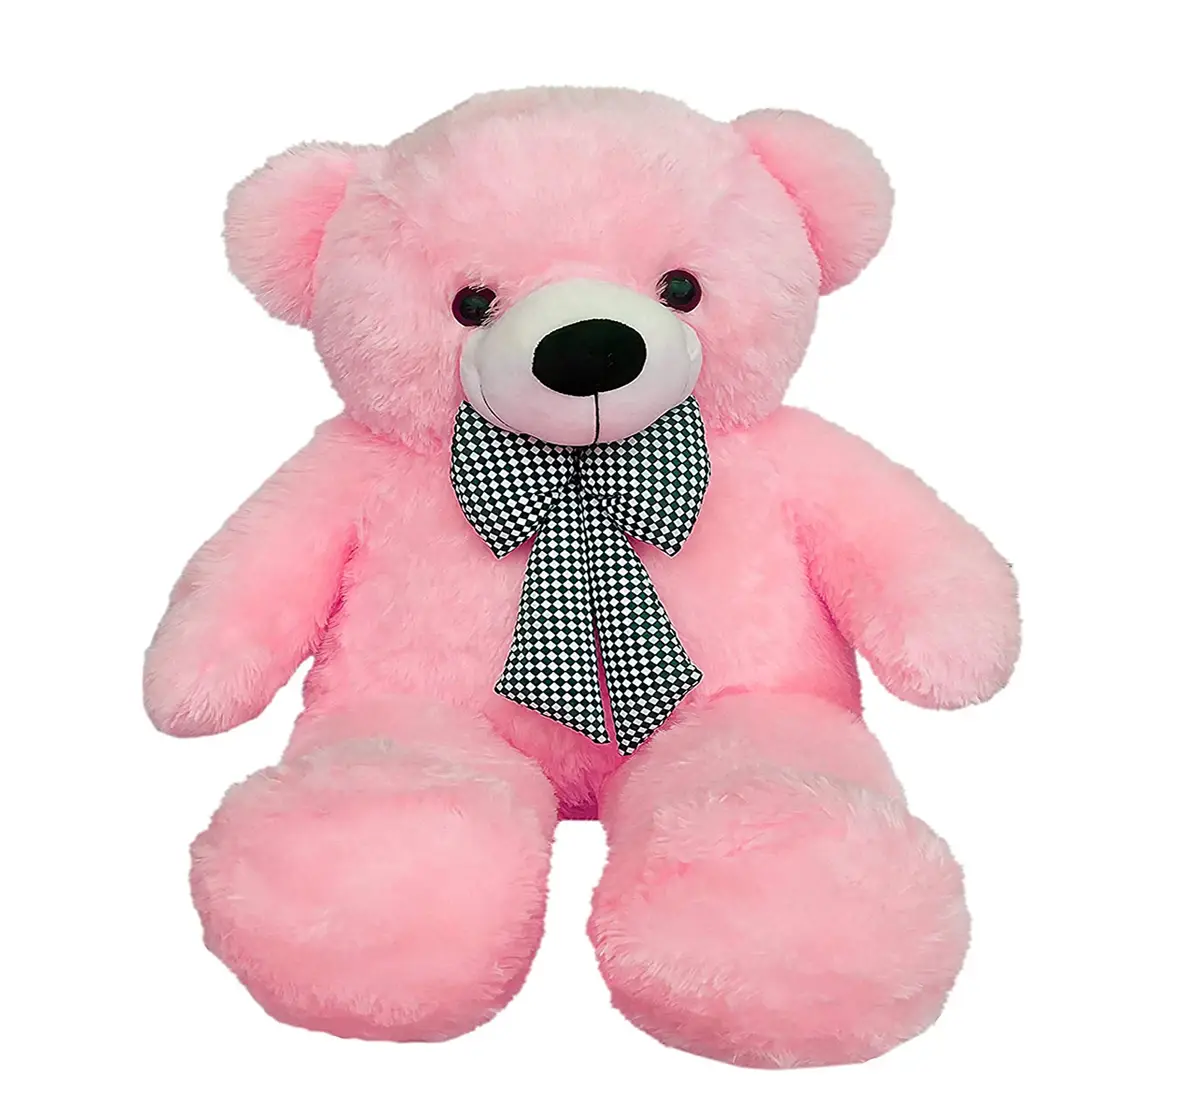 Huggable Plush Teddy Bear With Neck Bow by Webby, Pink, 3 Feet